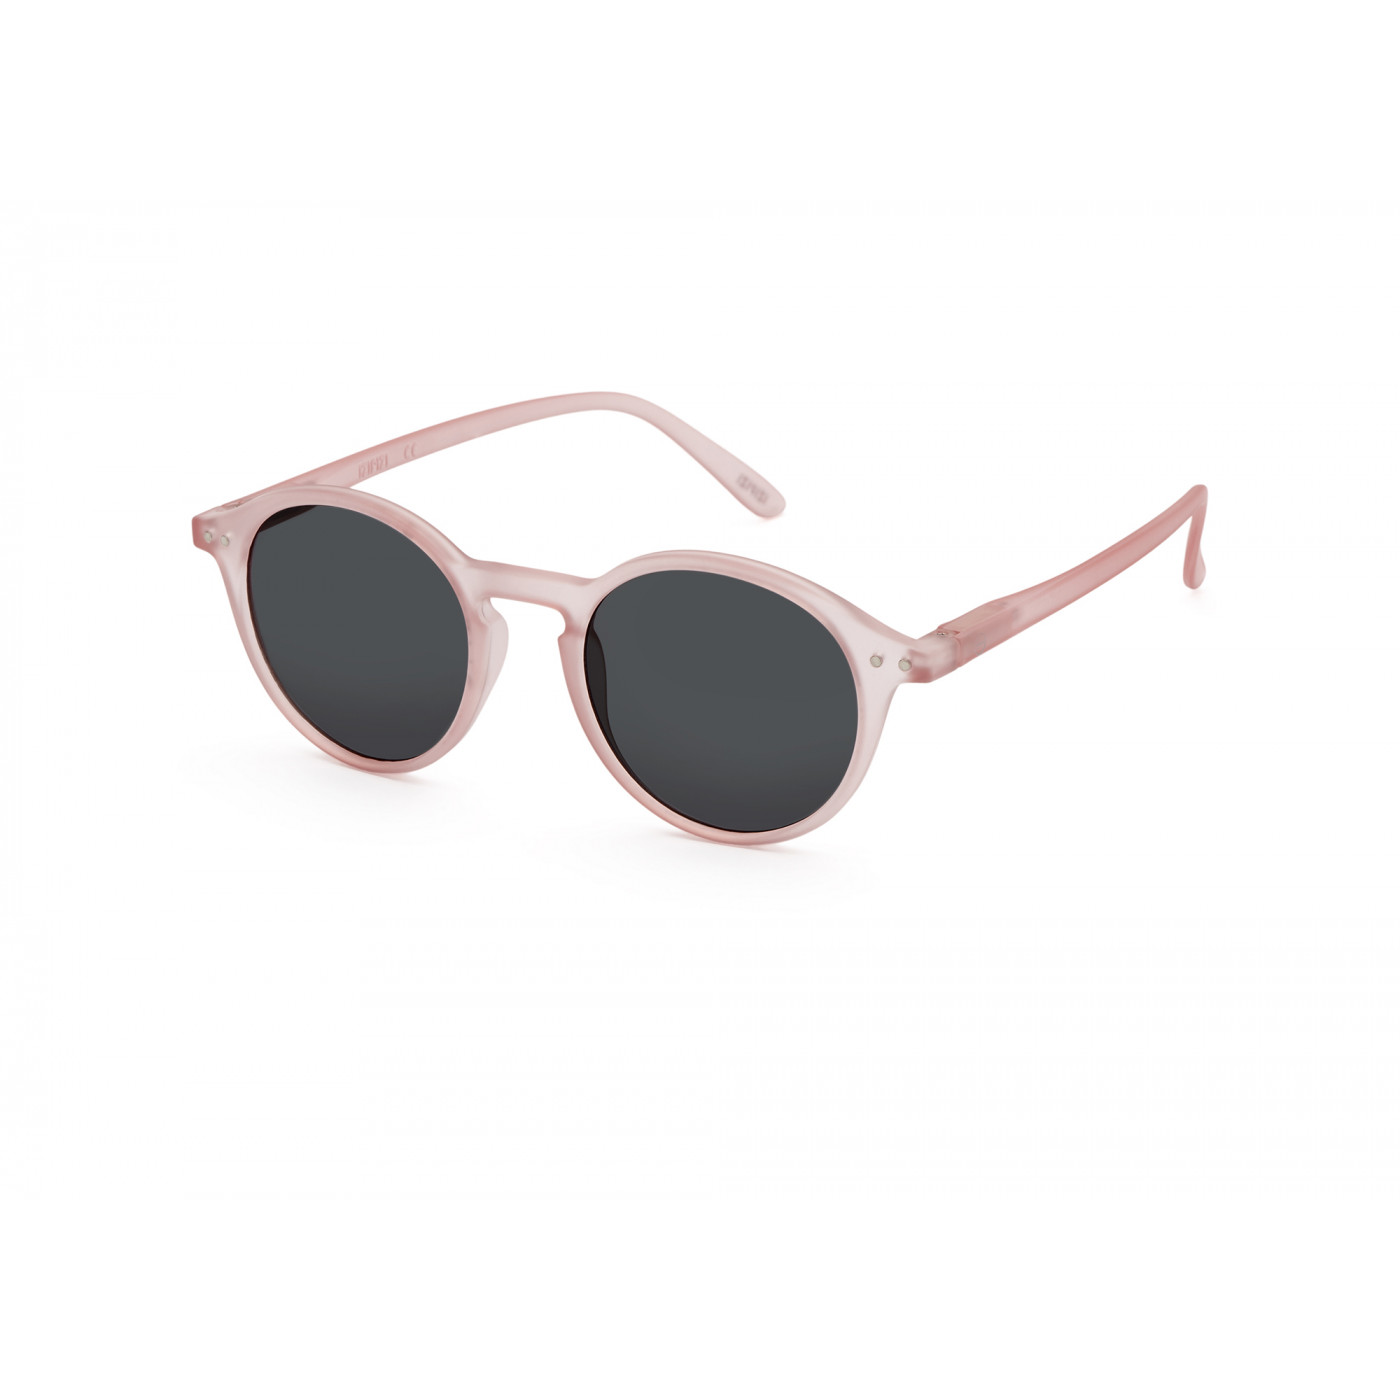 sunglasses frame D pink by Izipizi